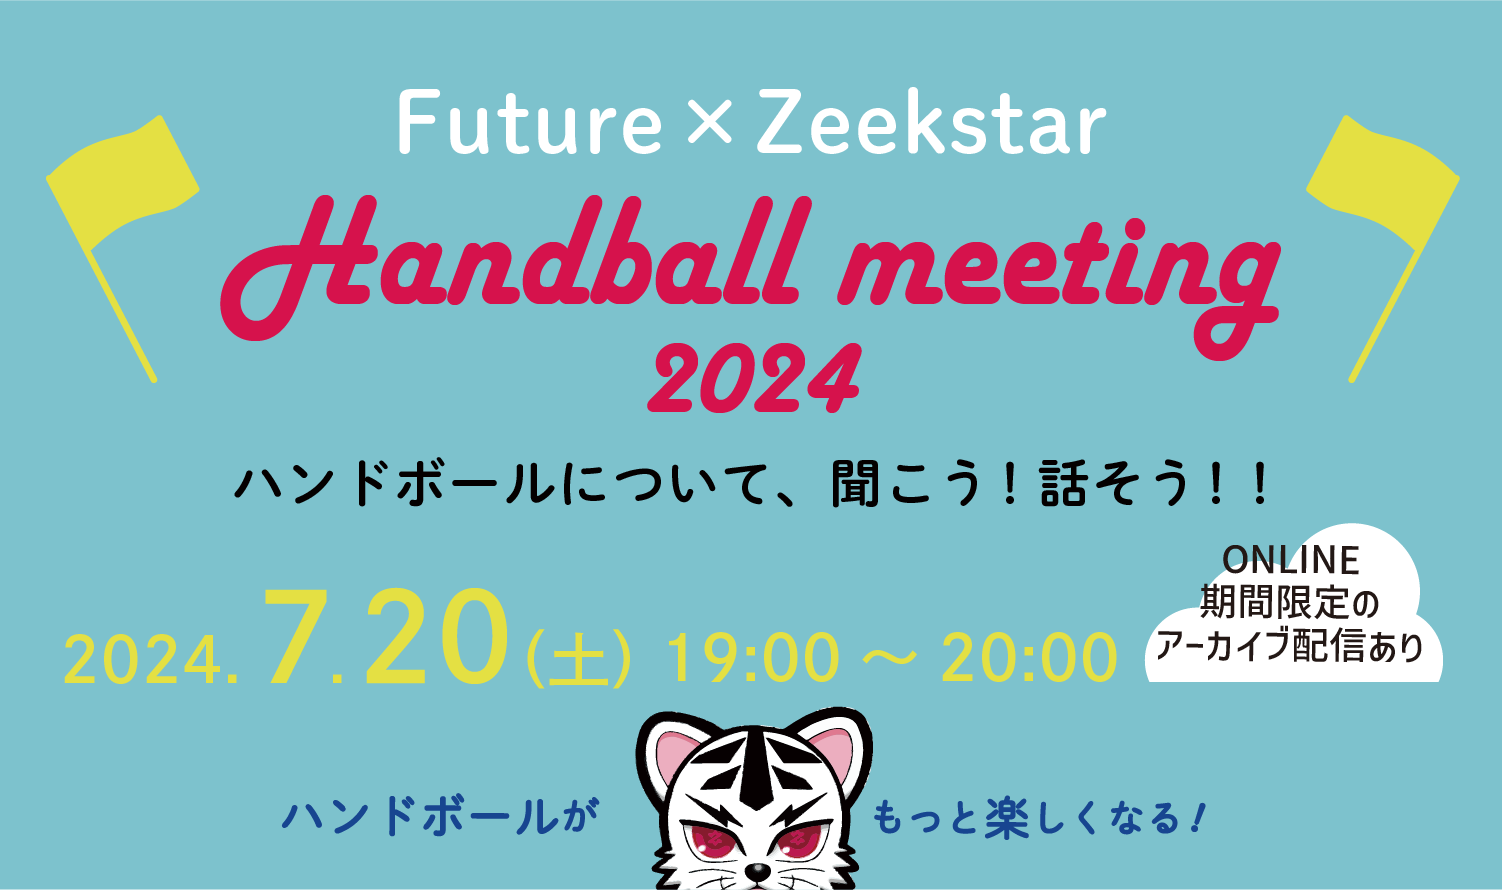 Future×Zeekstar Handball meeting 2024